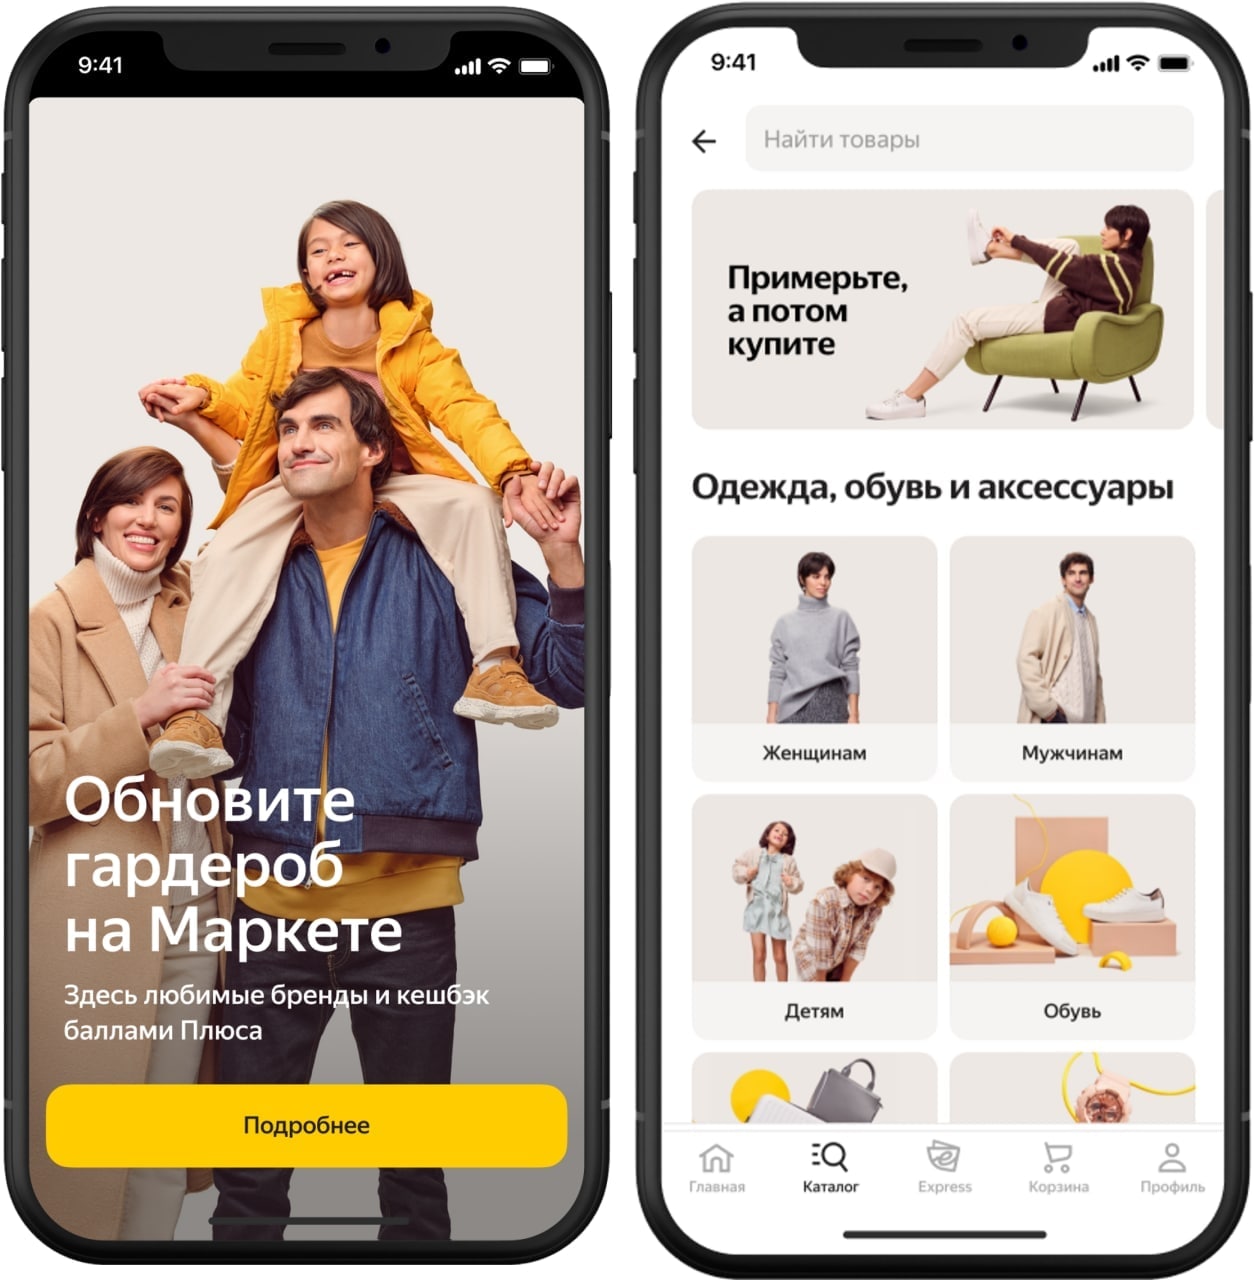 Яндекс.Маркет начал продавать одежду и обувь известных брендов